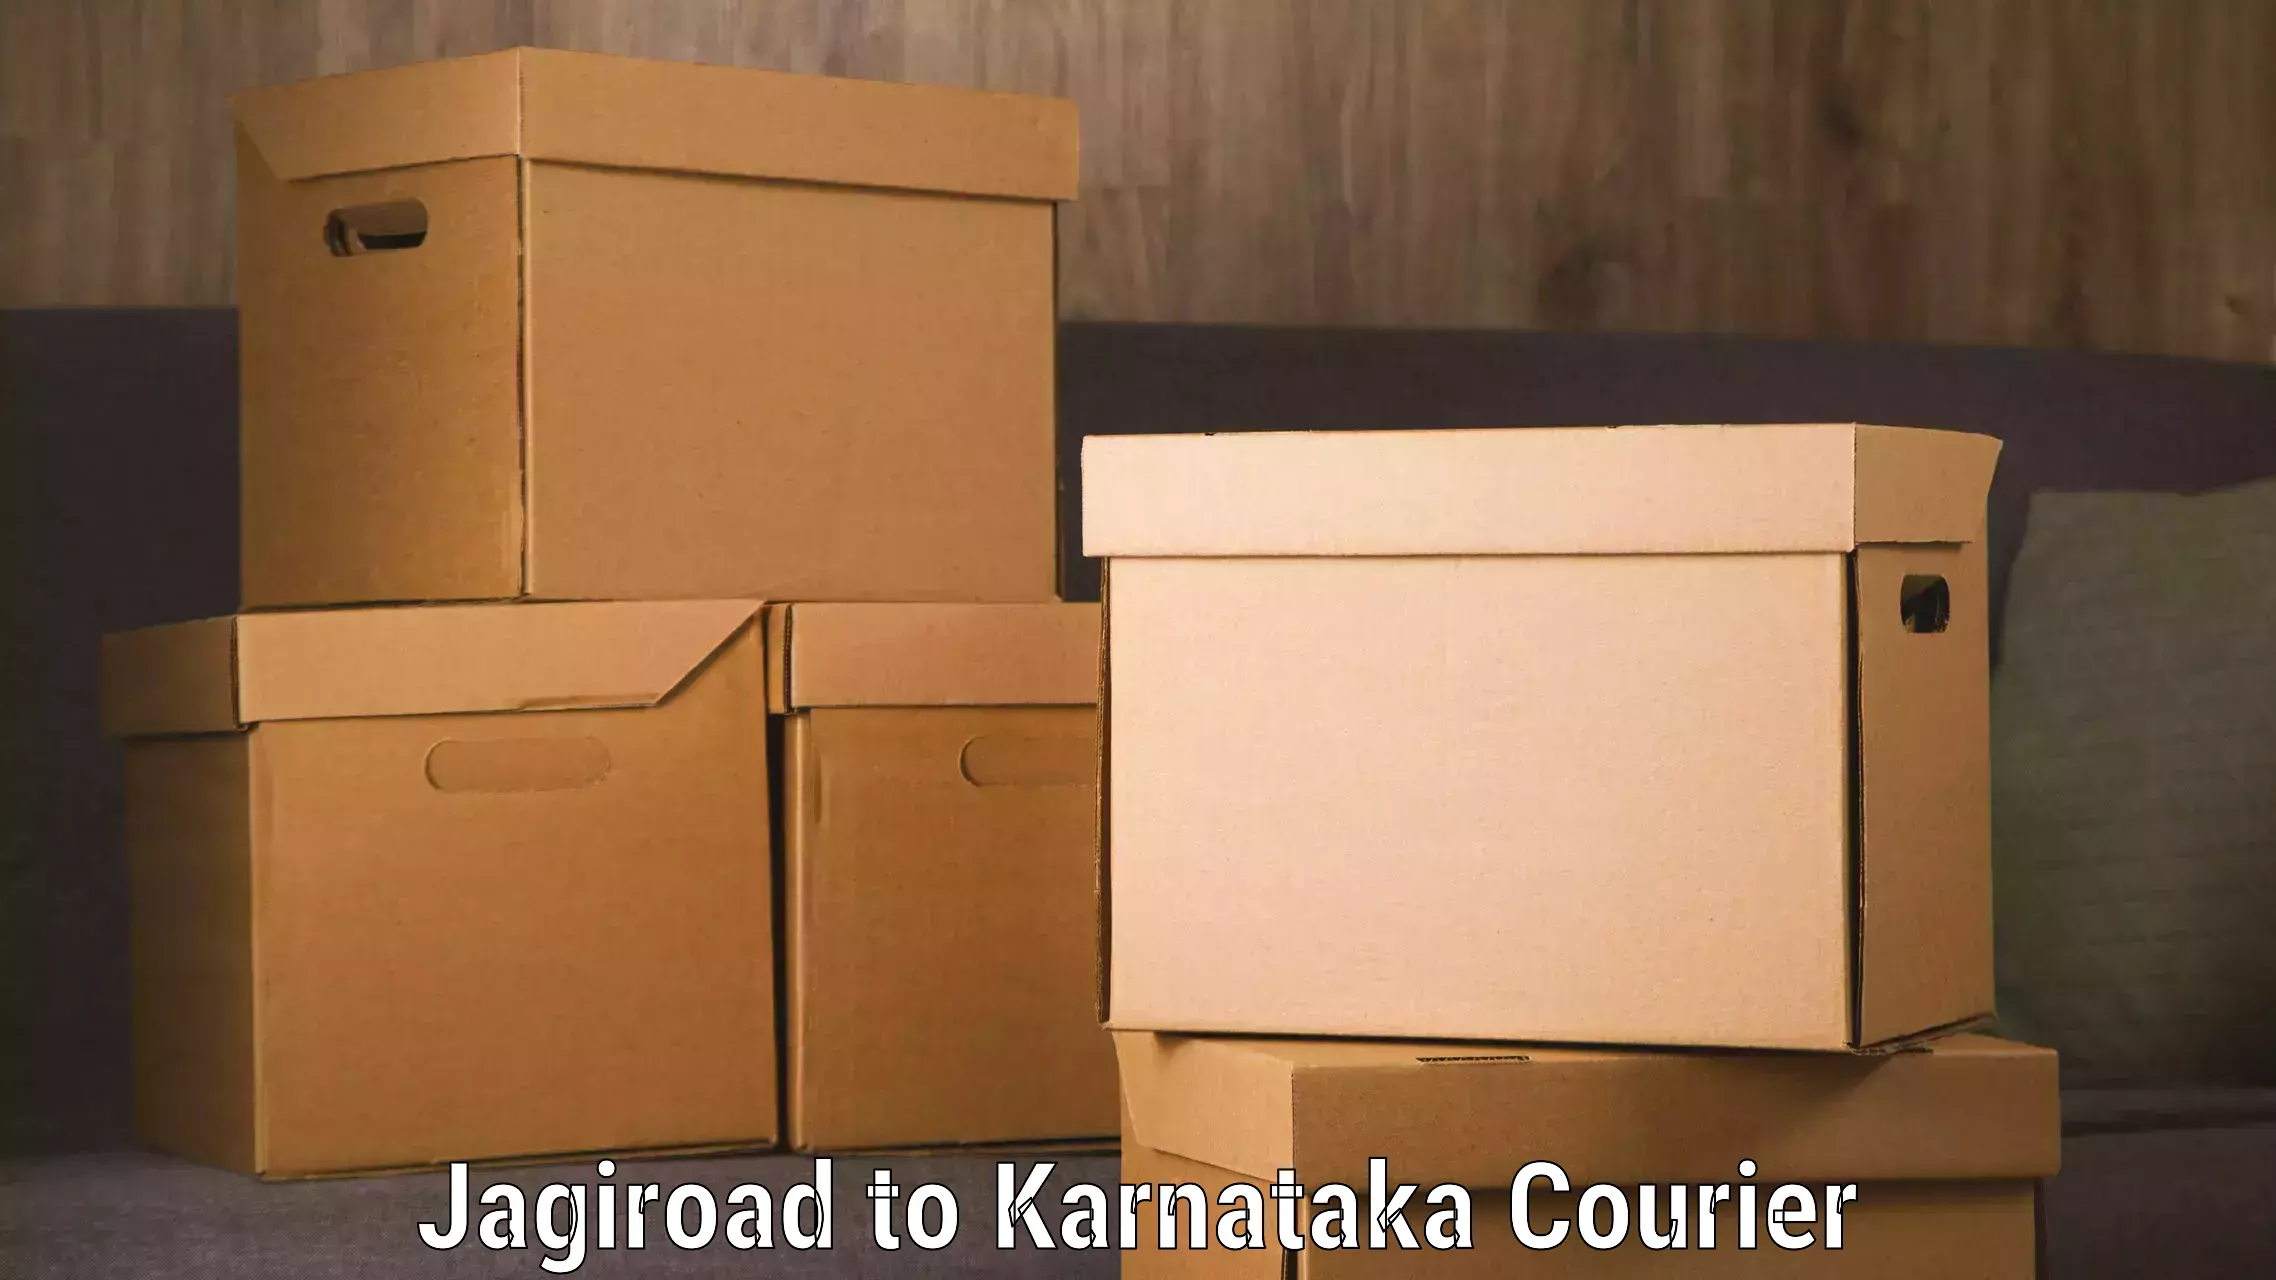 Excess baggage transport in Jagiroad to Karnataka